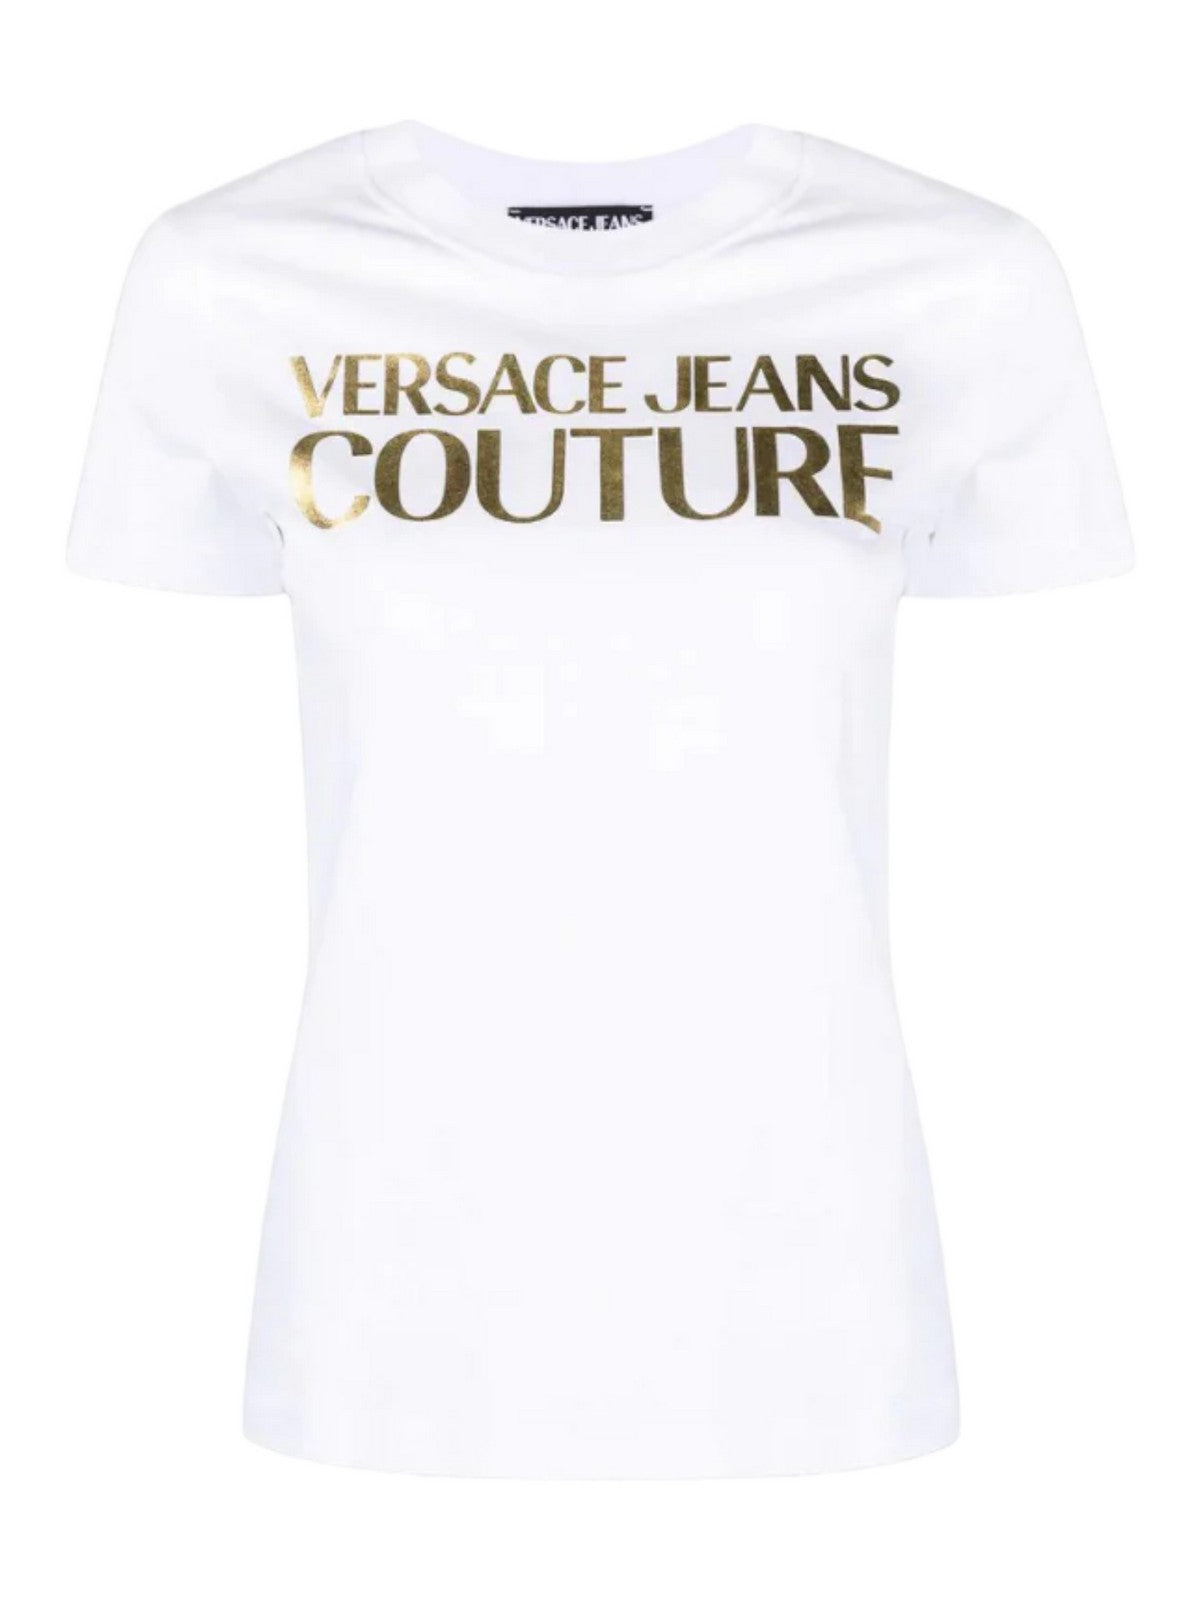 VERSACE JEANS COUTURE T-Shirt et Polo Femme 75HAHT01 CJ00T G03 Blanc